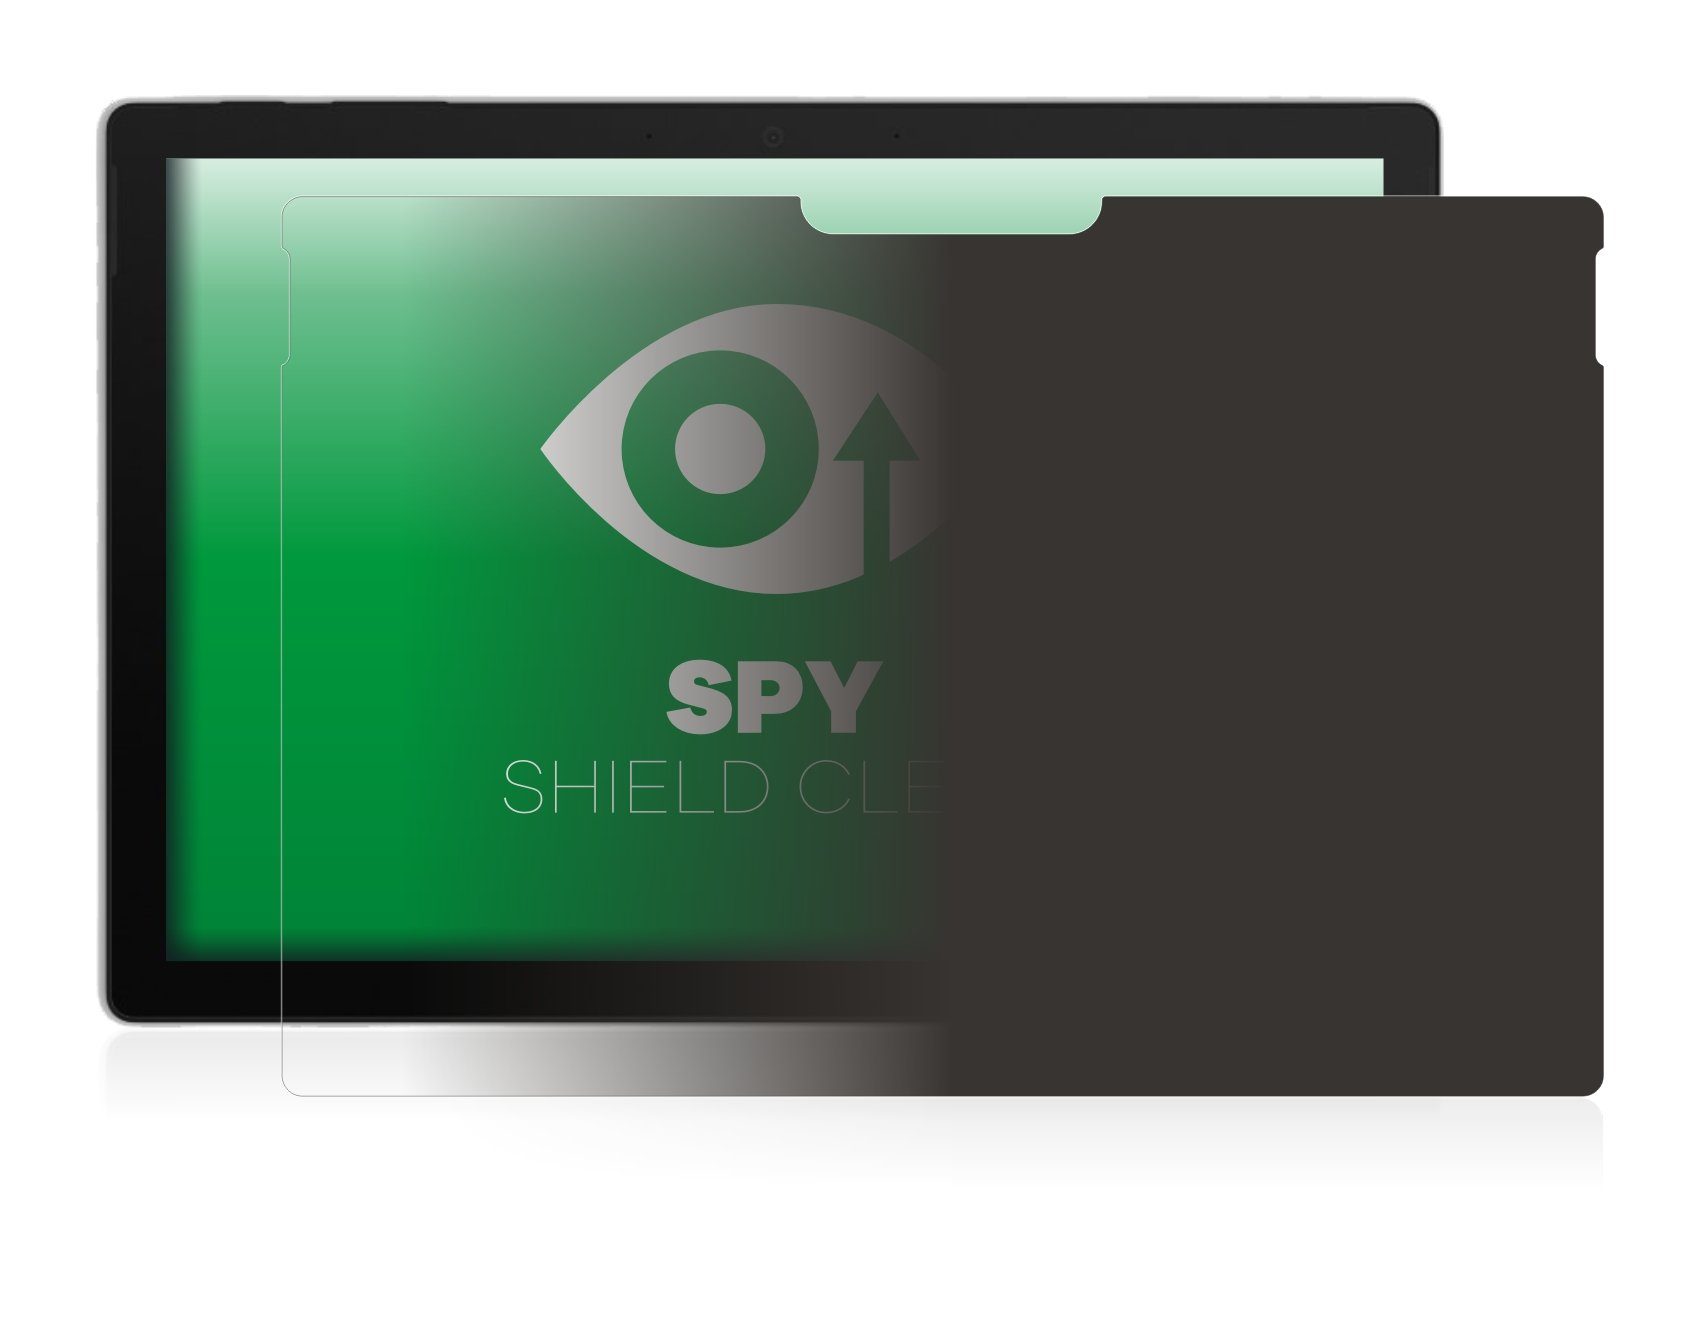 Olnema Sichtschutzfolie & Blickschutzfilter kompatibel mit Microsoft Surface Pro 7 & Pro 6 & Pro 5 Privacy Filter I Anti-Spy Folie 12.3 Zoll Entfernbar und Wiederverwendbar 